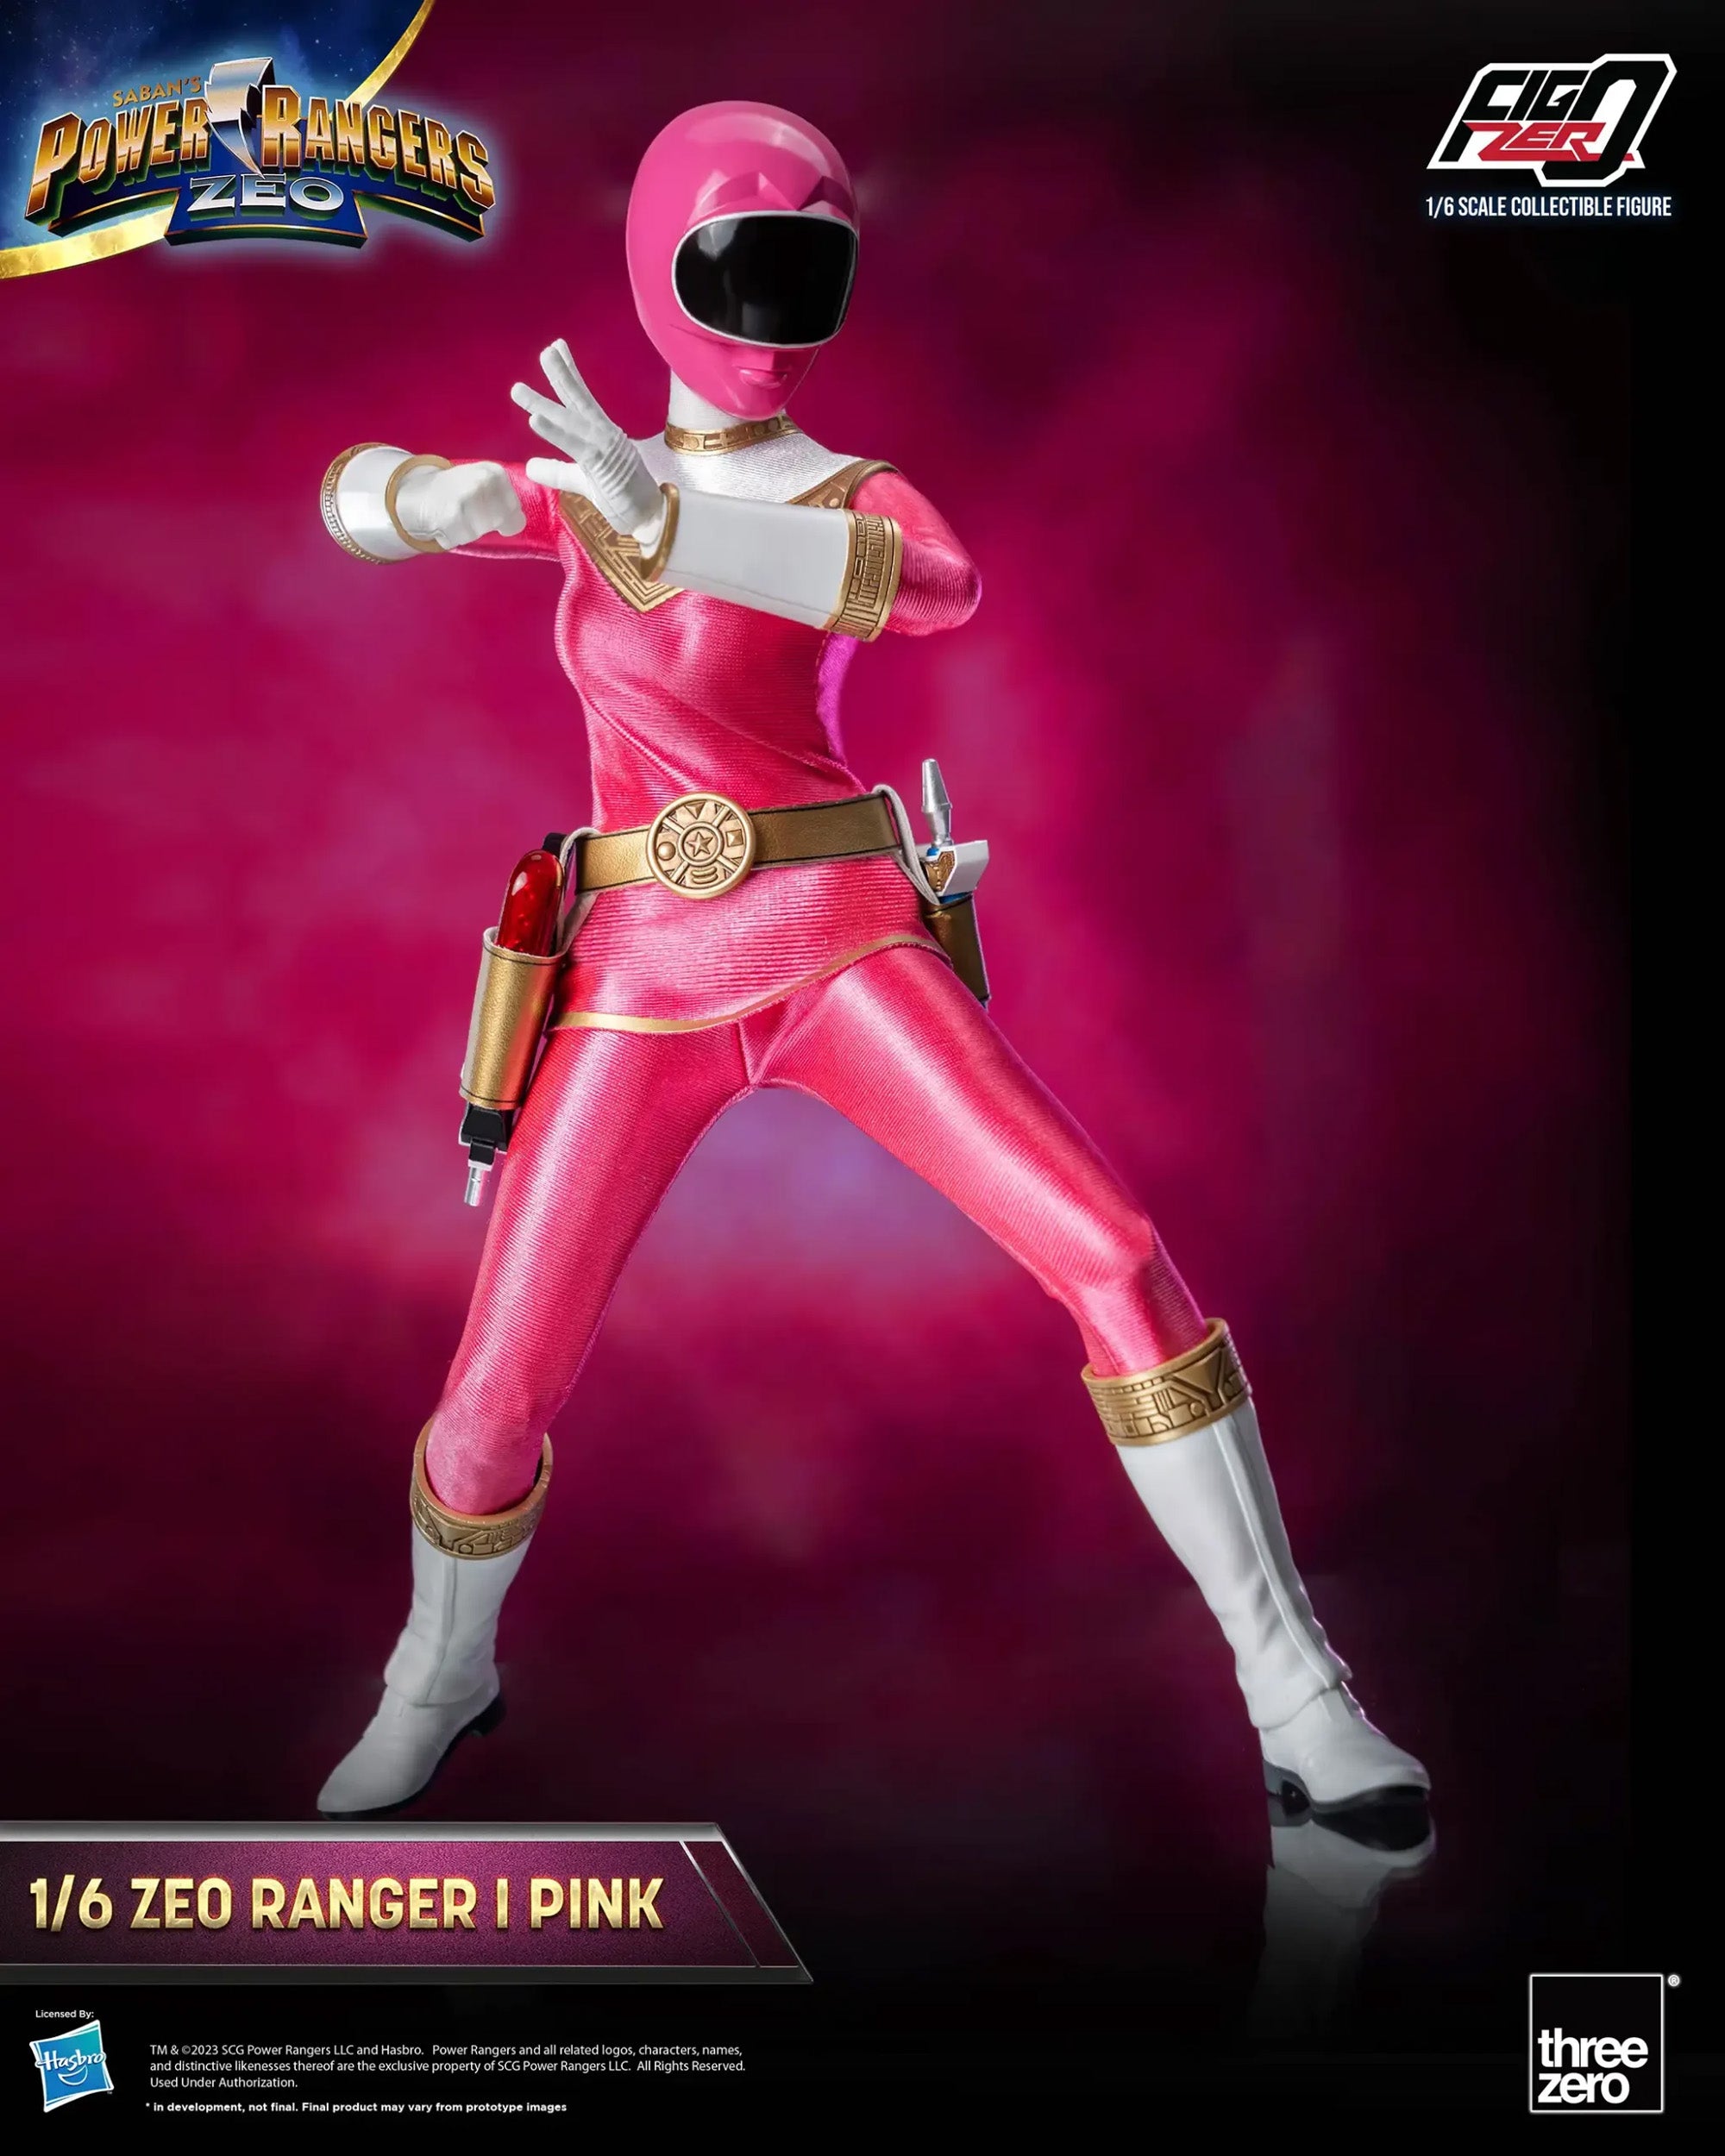 threezero - FigZero - Power Rangers Zeo - Zeo Ranger I Pink (1/6 Scale) - Marvelous Toys